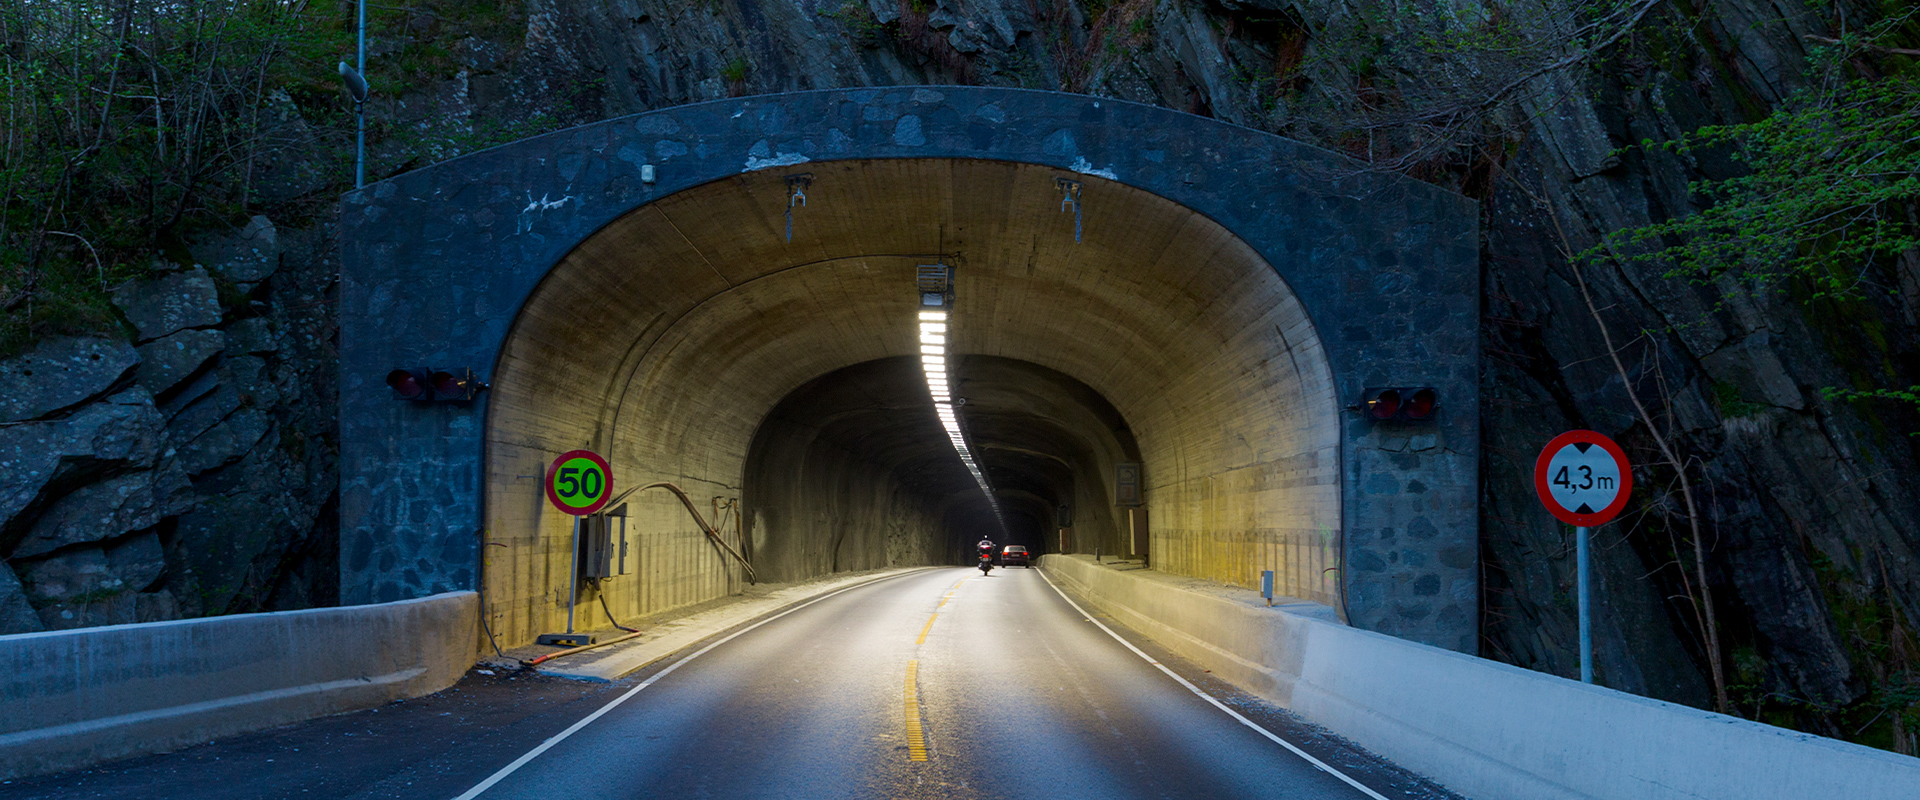 LED tunnel lighting of Nordhavn Tunnel